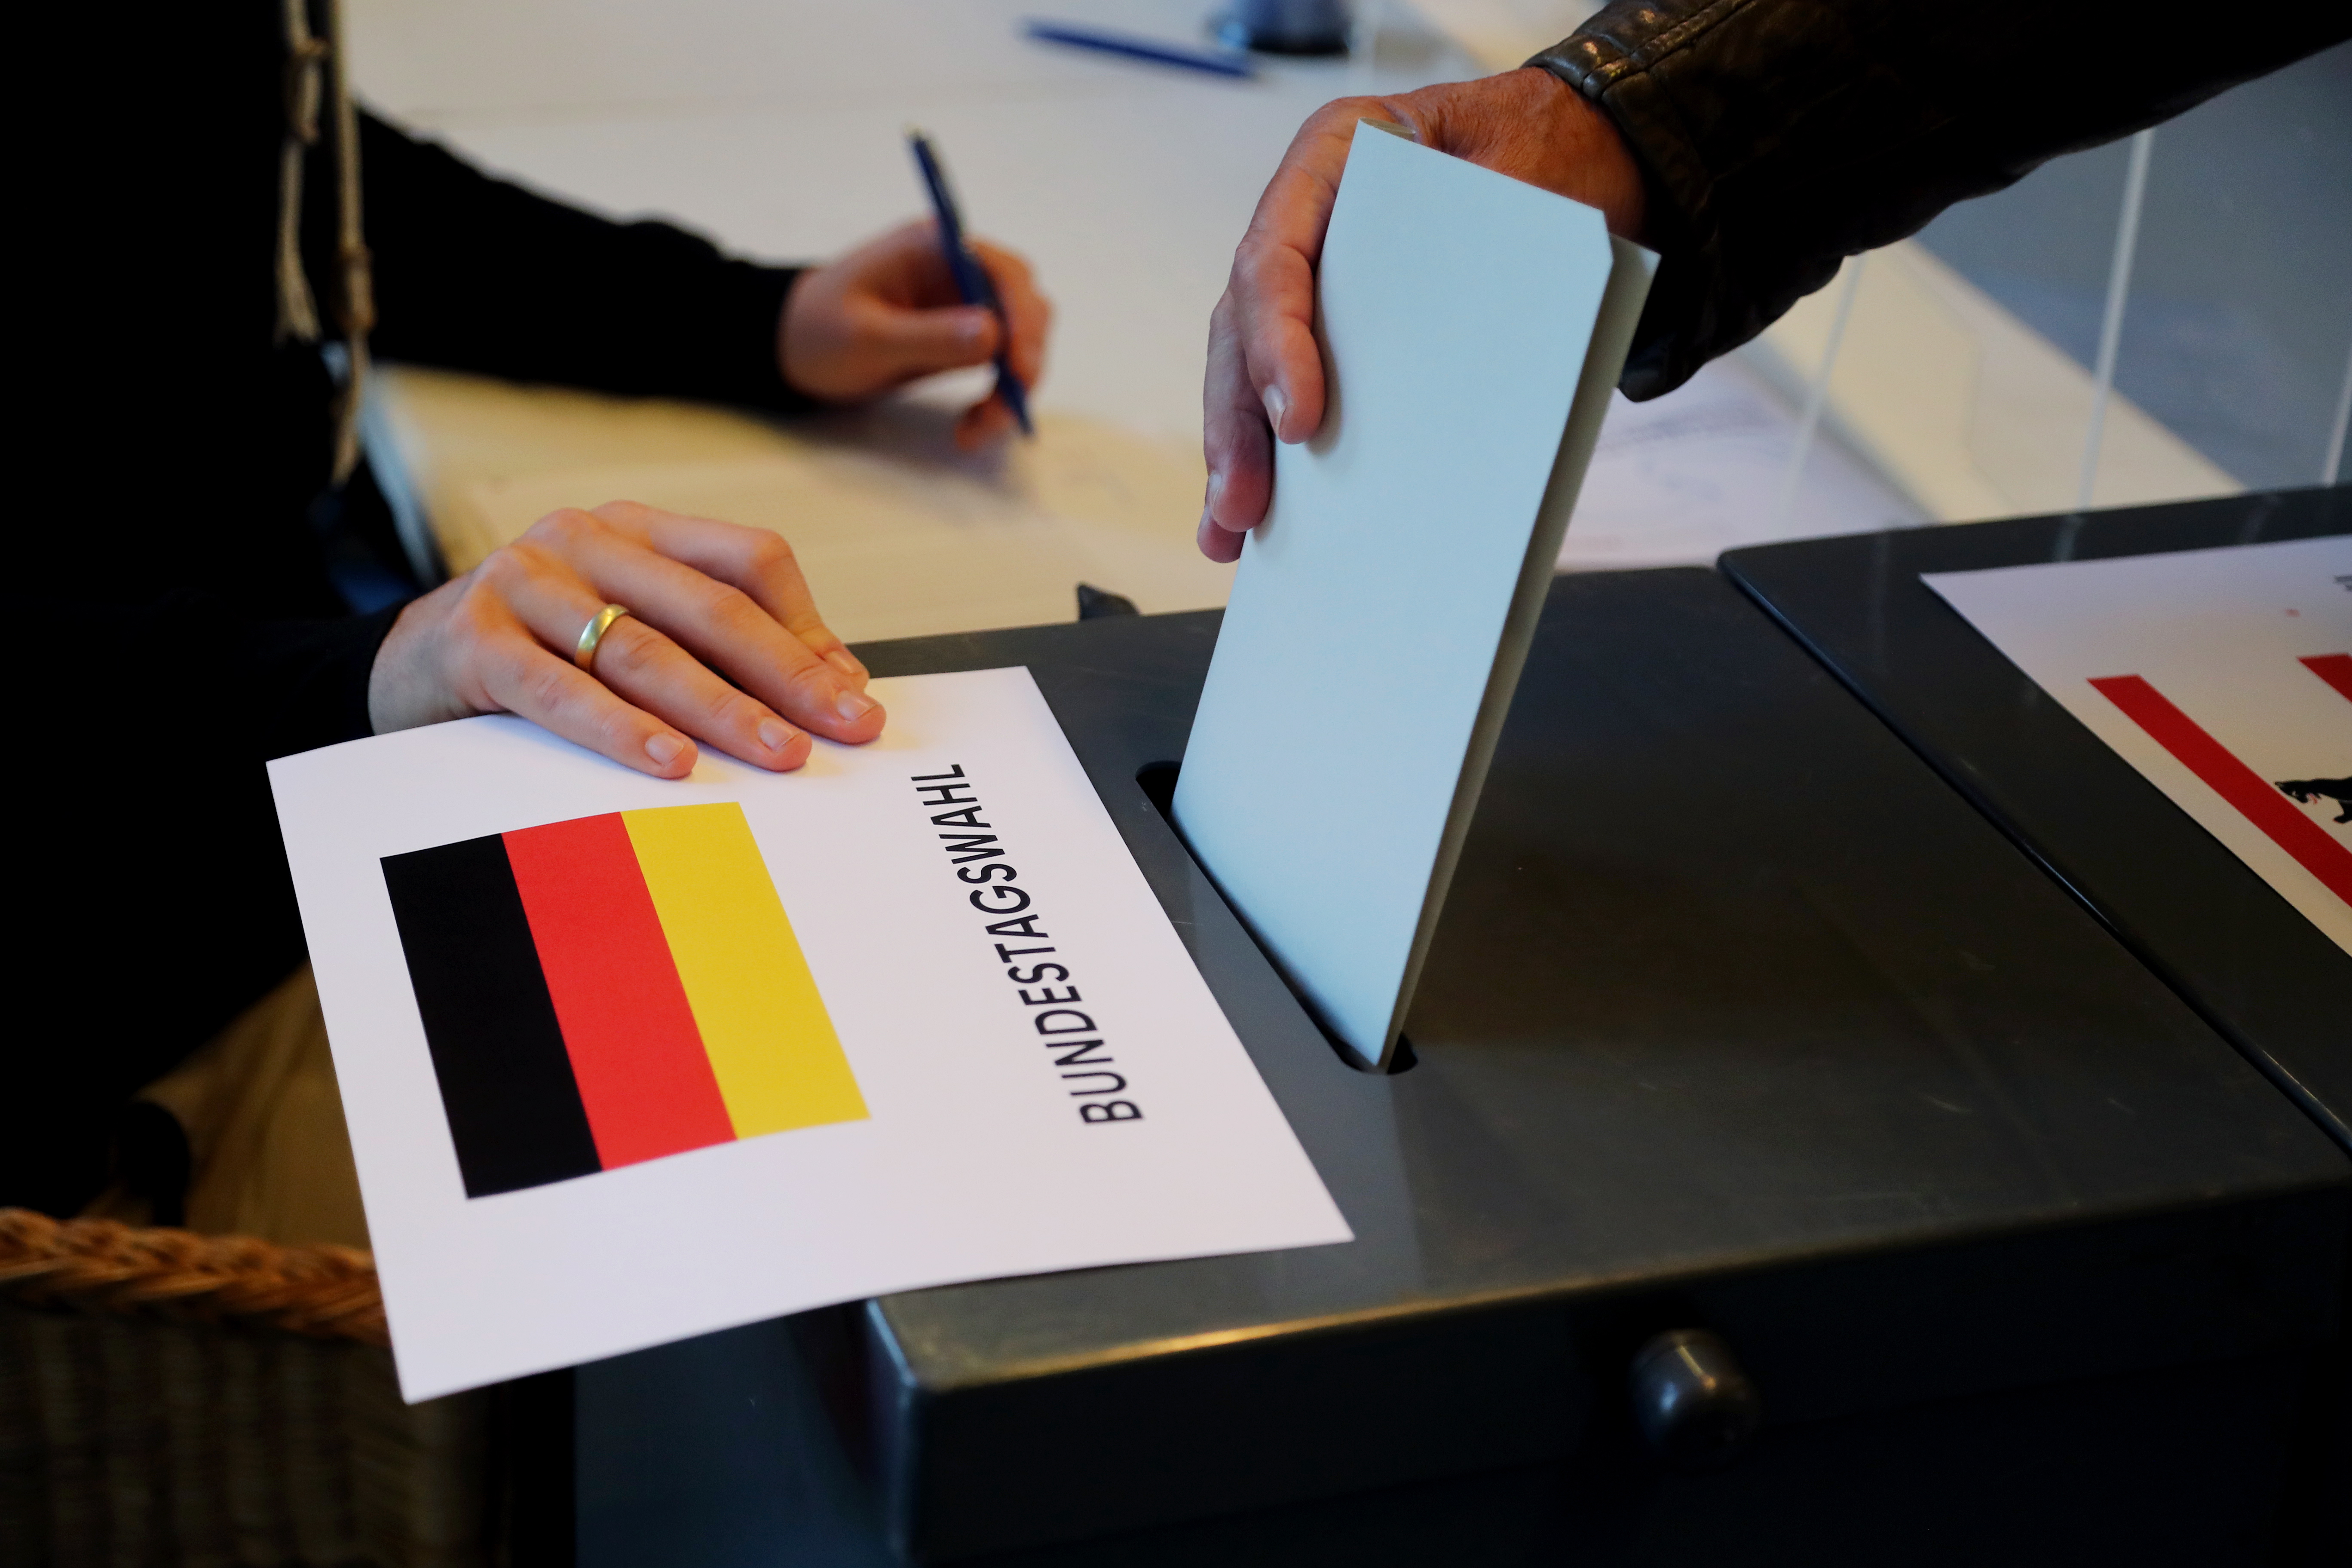 Deel van Duitsland op verkiezingsdag opgeschrikt door bom uit WOII